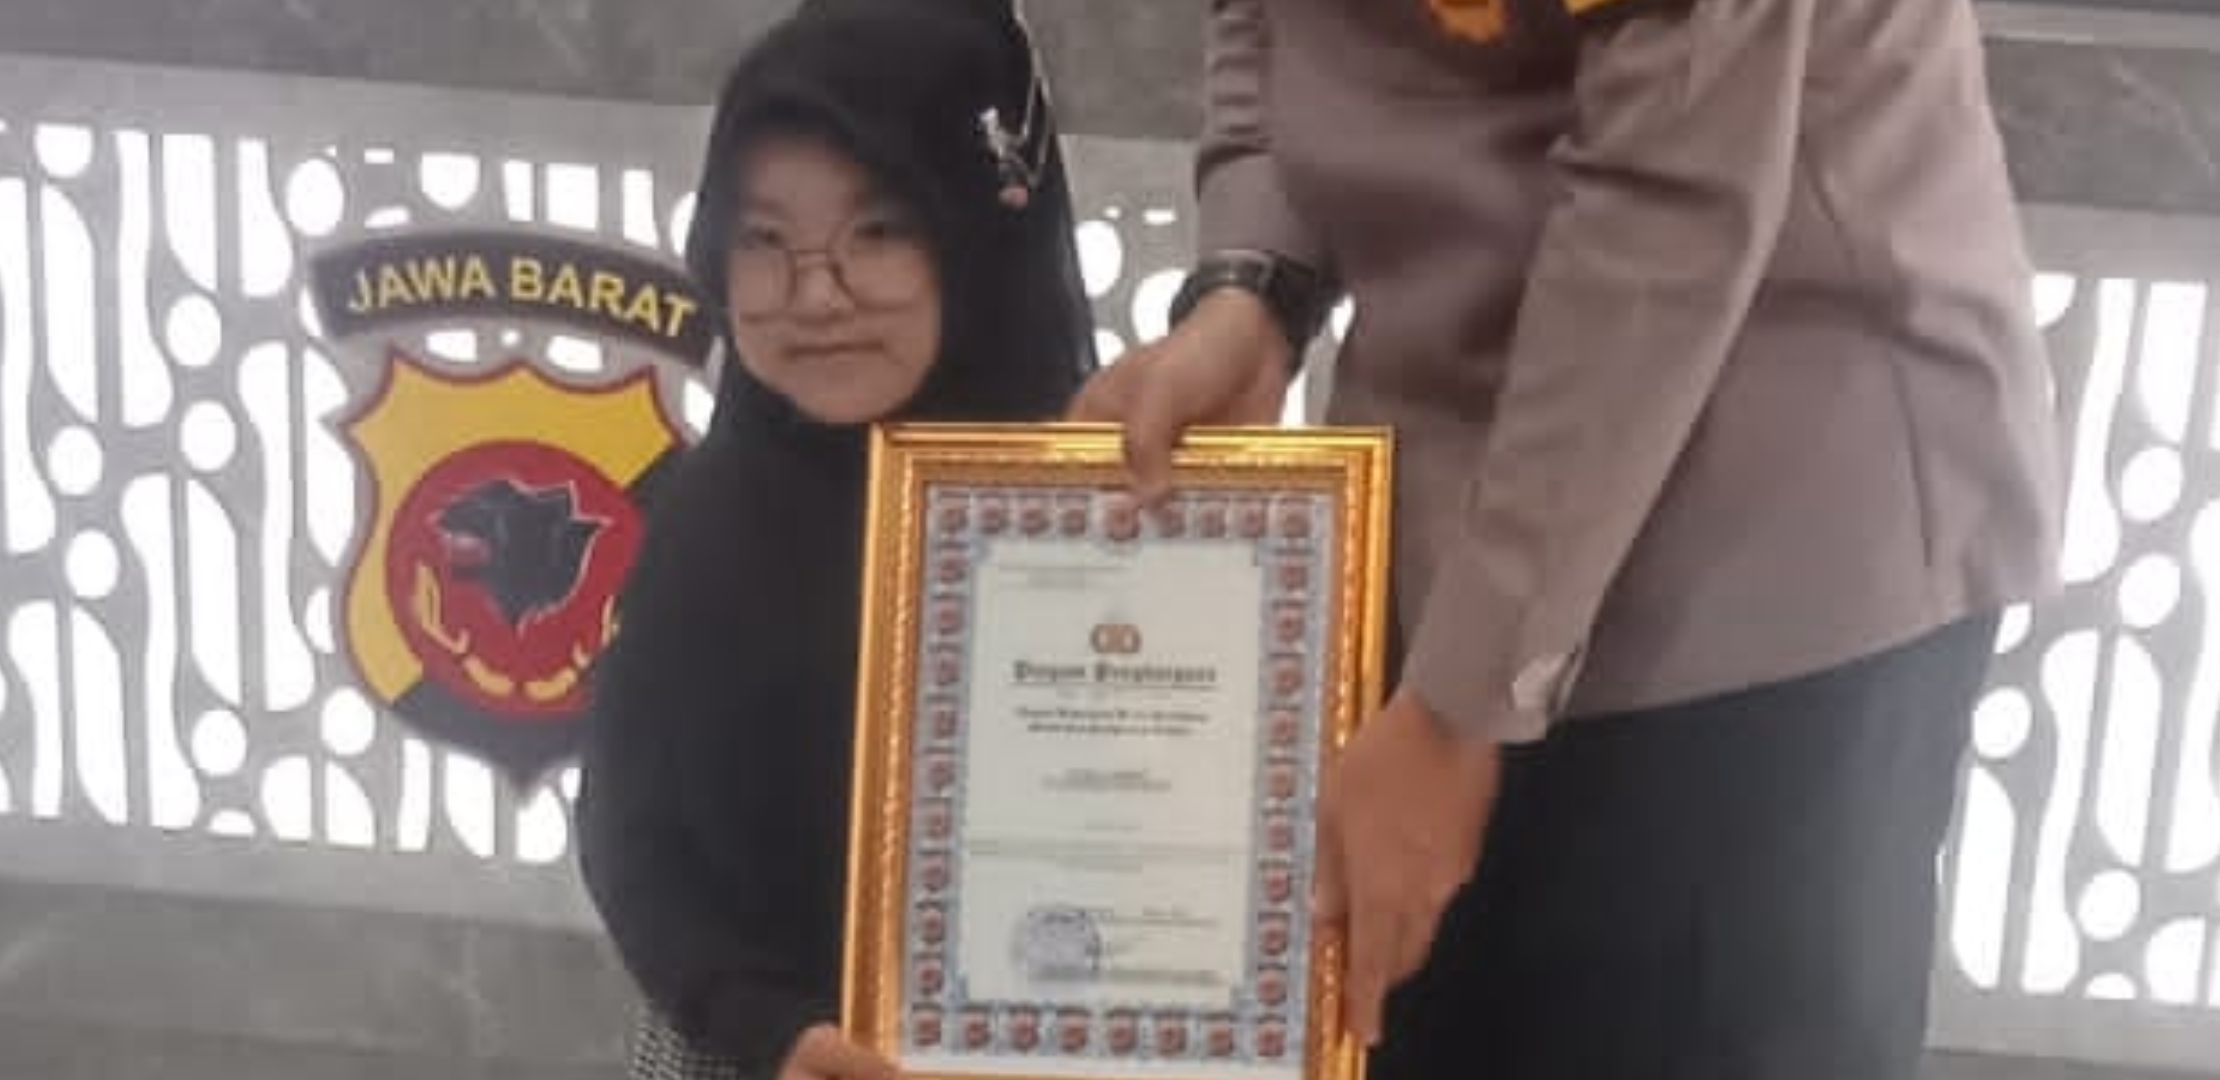 Syifa Indri Da'i Bhabinkamtibmas Cilik saat menerima penghargaan dari Kapolres Karawang